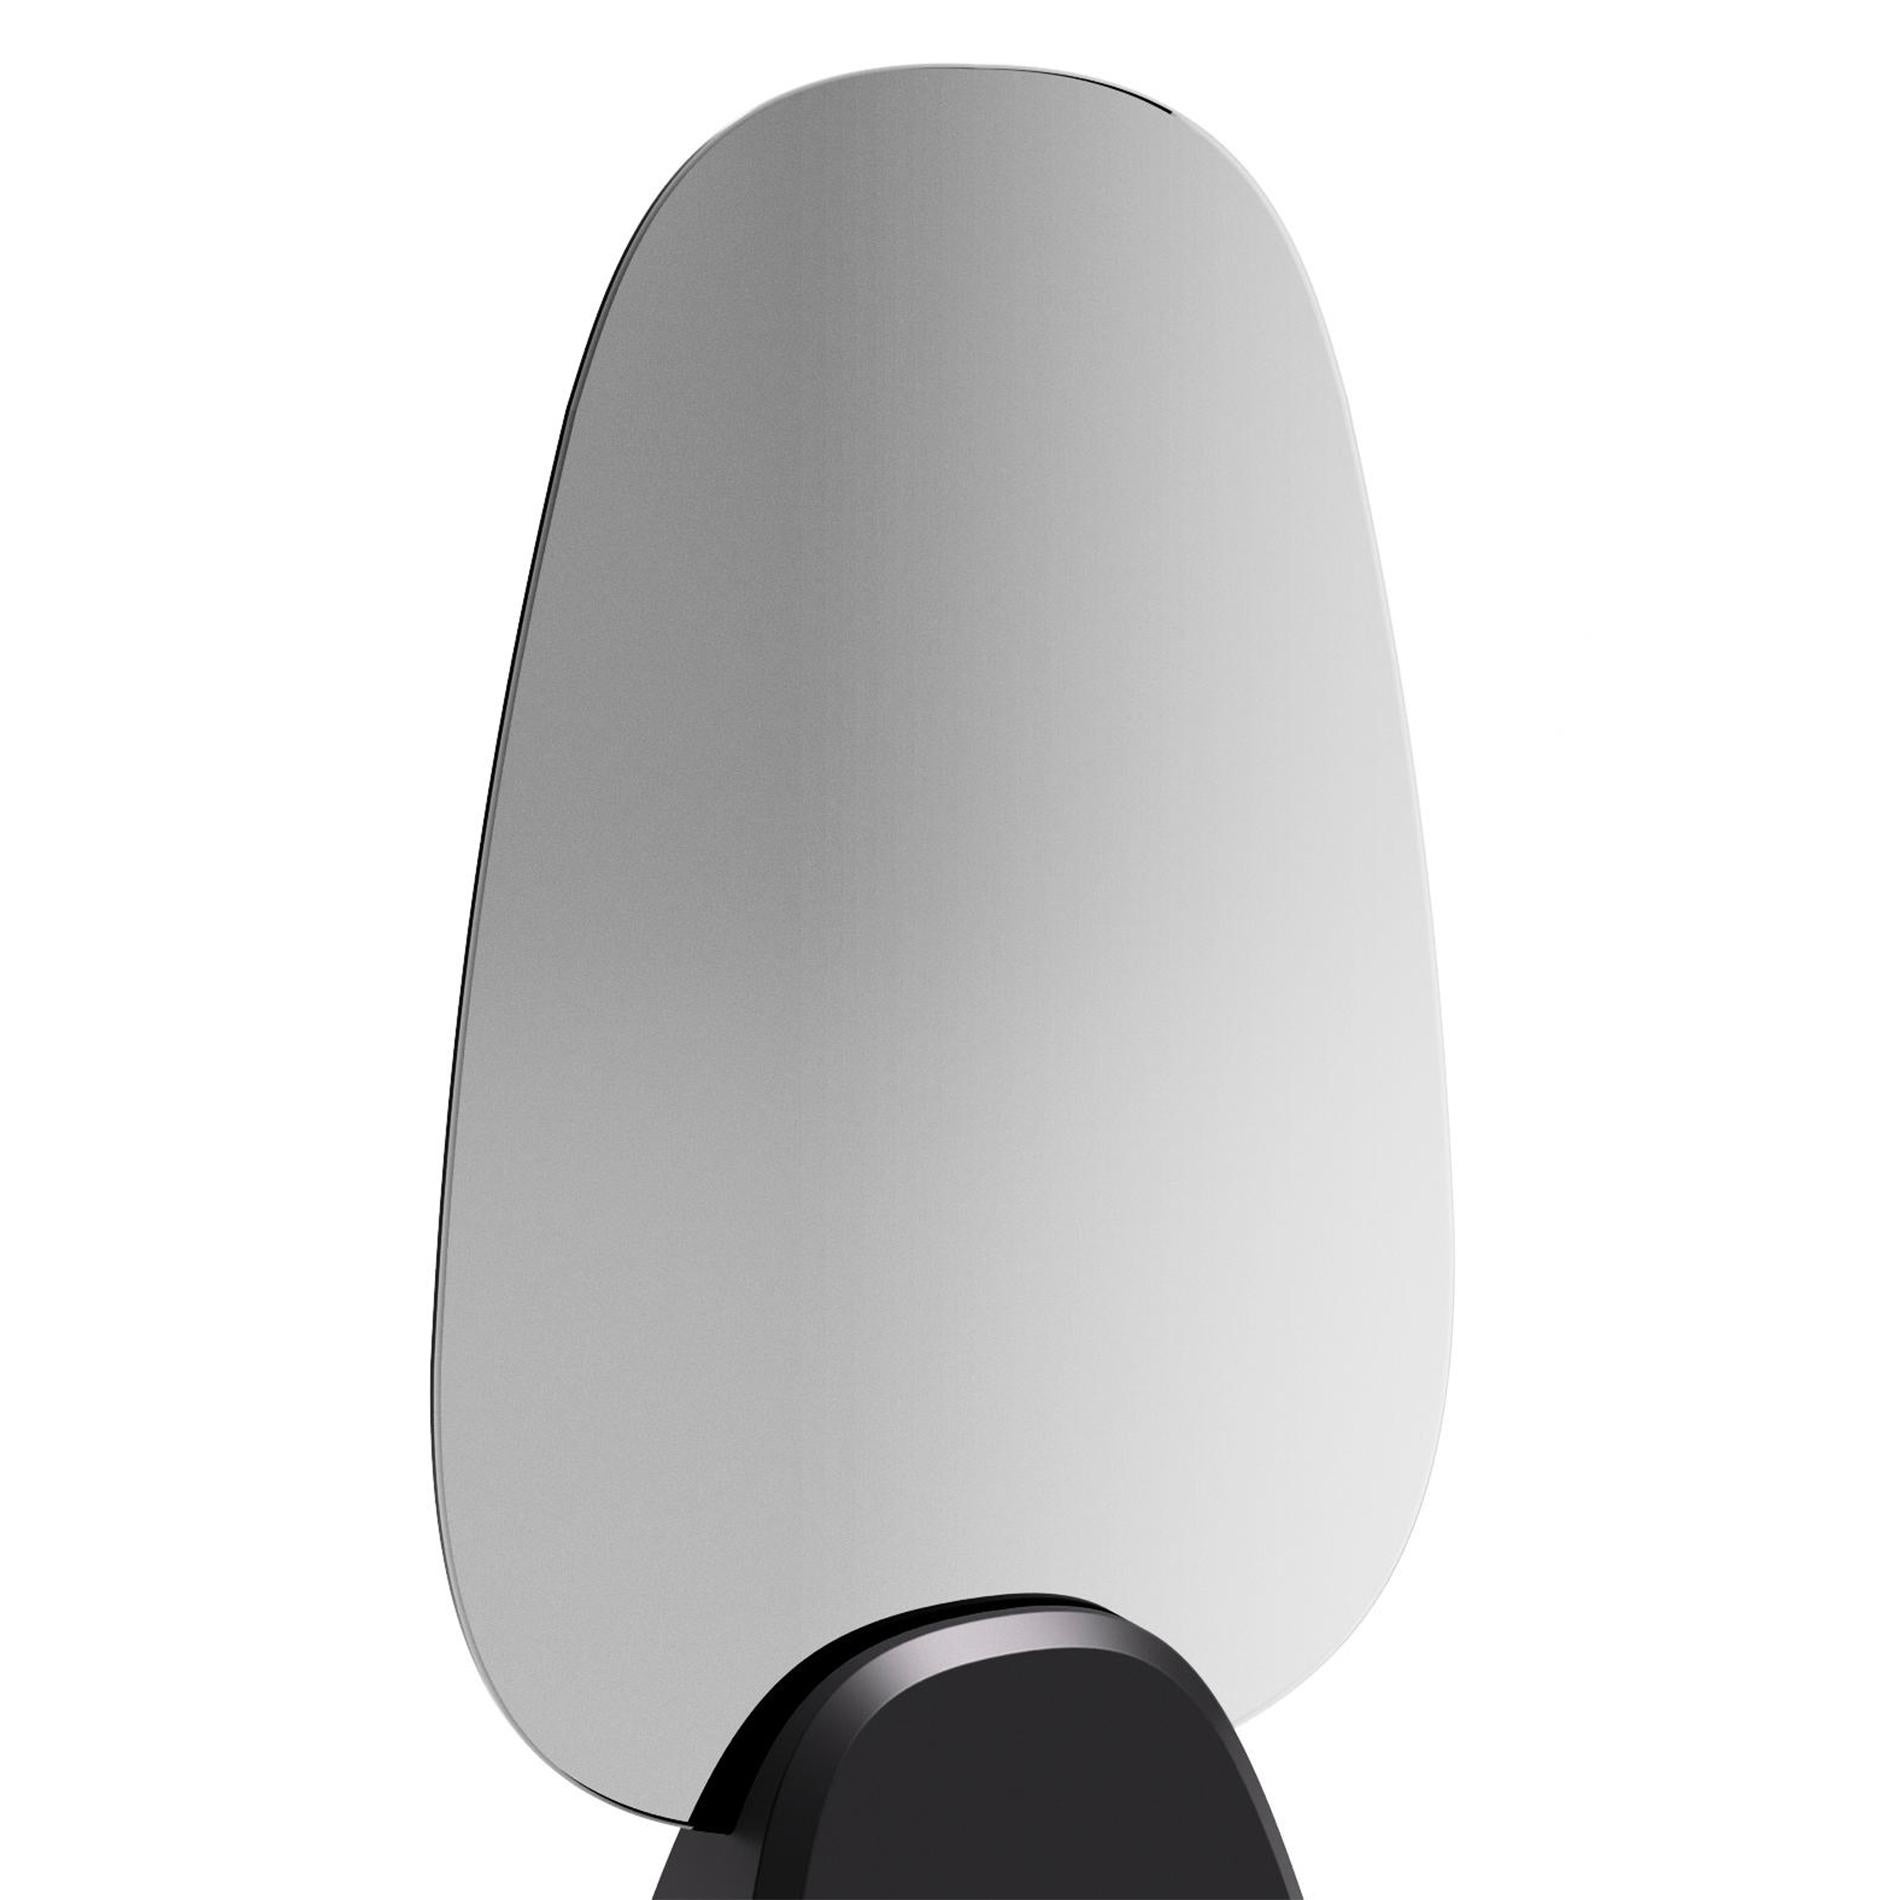 Mirror Pebble mit Rauchglasscheibe auf
schwarz glänzend oder mattschwarzer Sockel.
Auch mit geräuchertem, doppelseitigem Spiegel erhältlich
glas auf glänzend schwarzem oder mattschwarzem Sockel.
Die Paneele können aus geräuchertem doppelseitigem